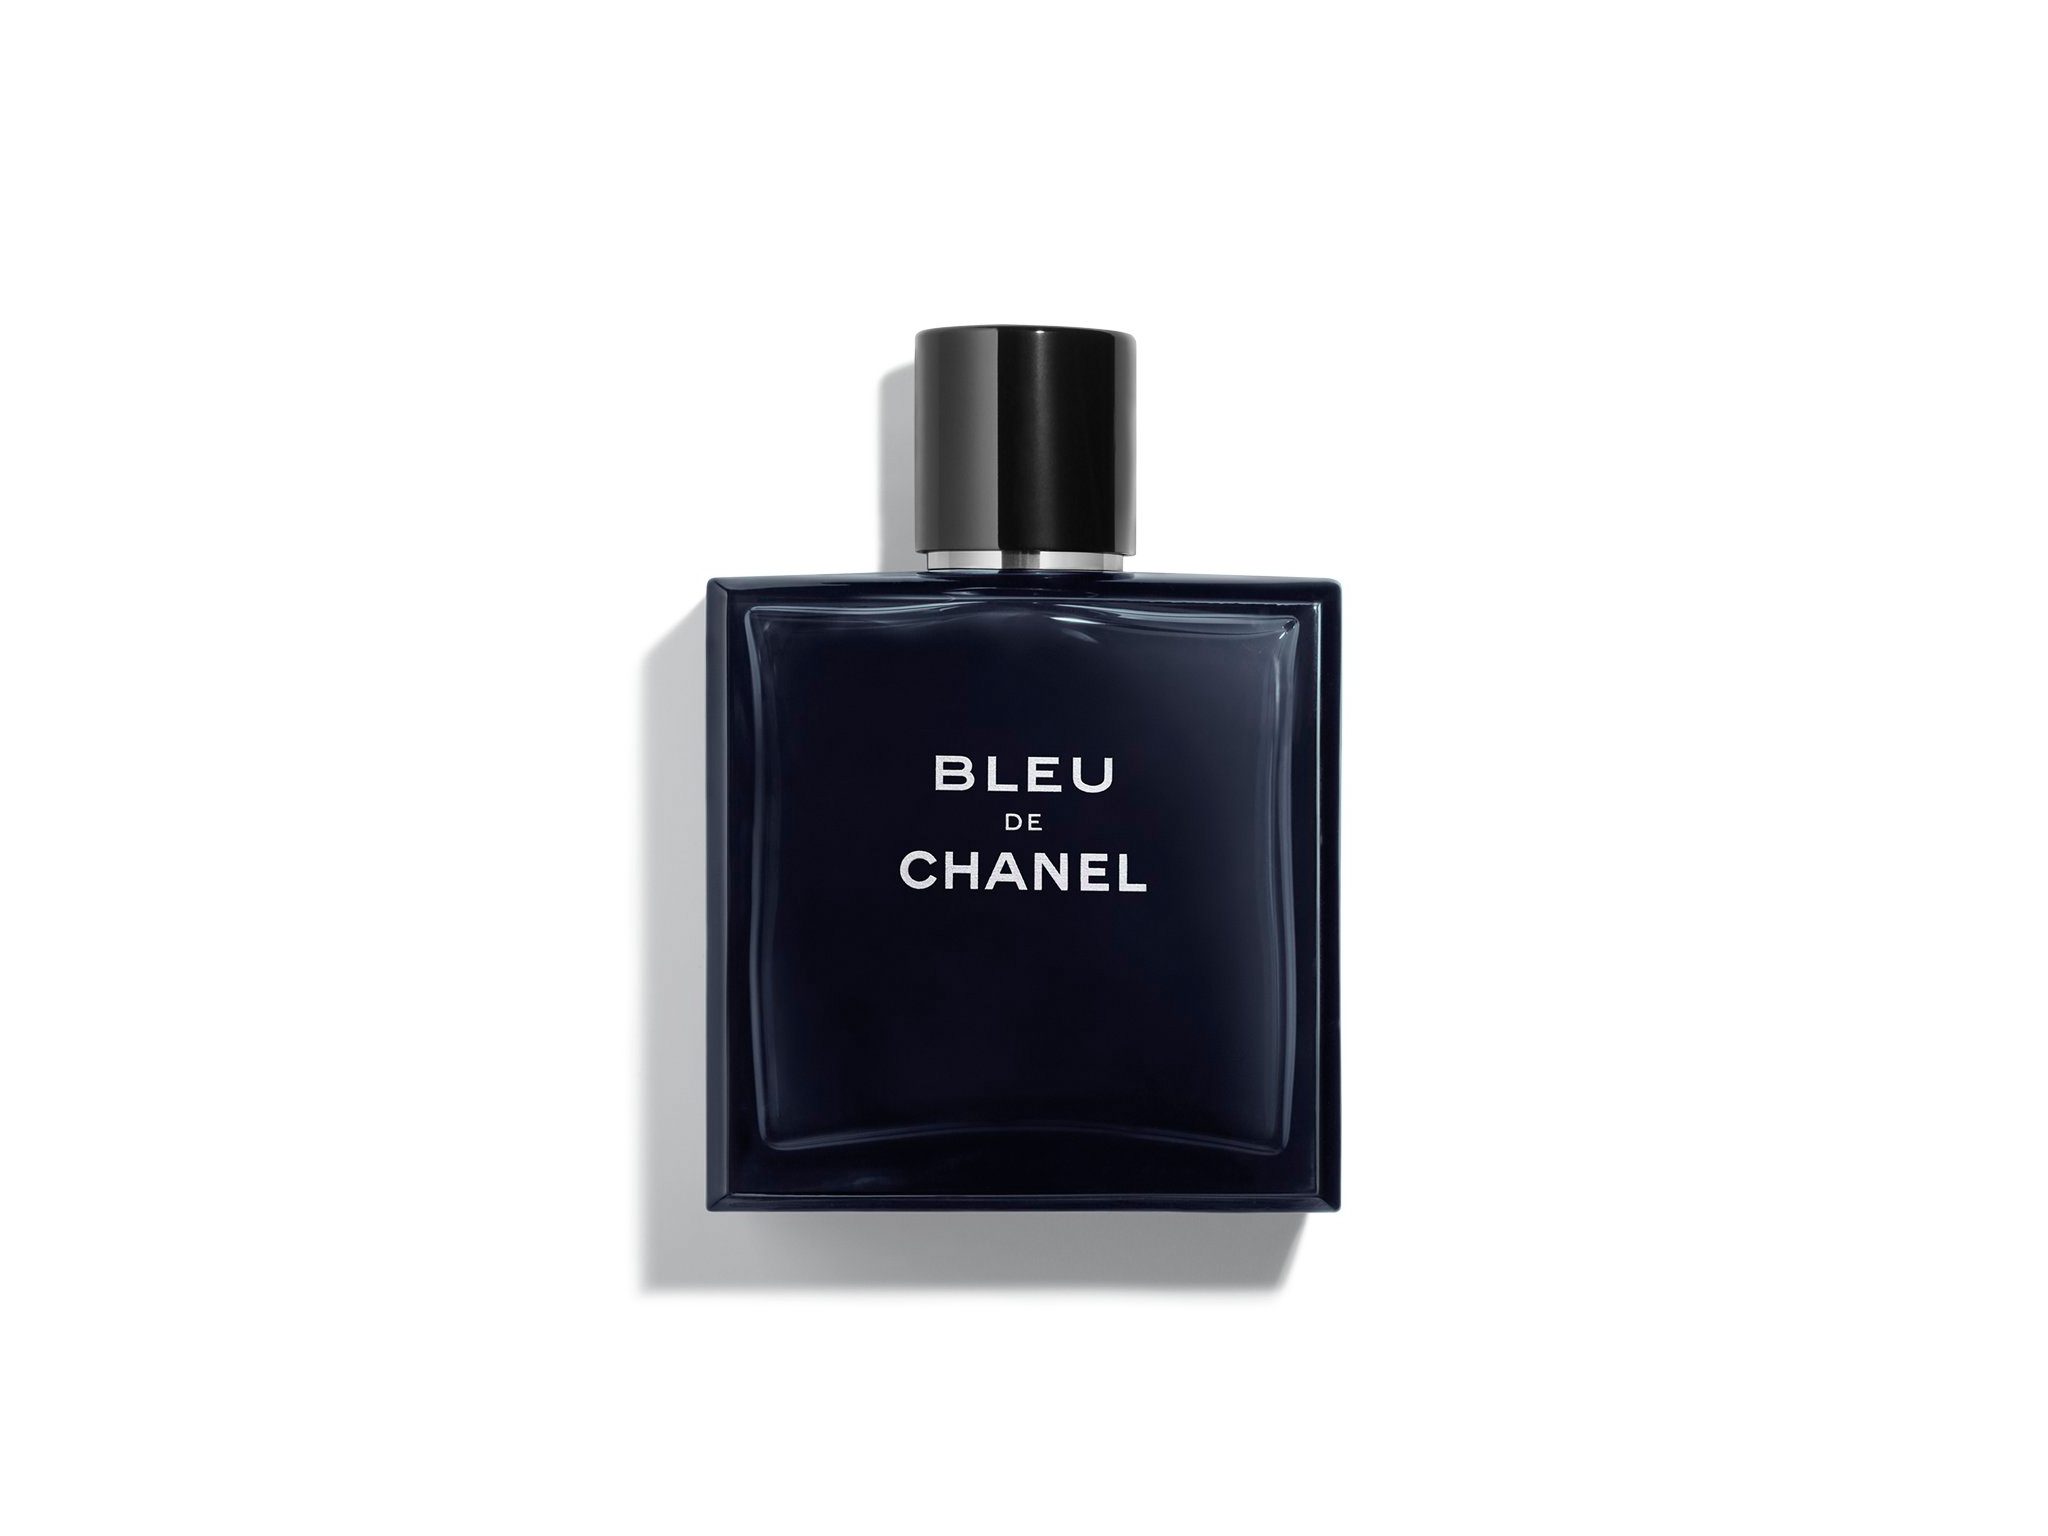 CHANEL BLEU DE CHANEL BLEU AFTER SHAVE LOTION 100ML New ฿2,250 chanel bleu  lotion after shave • 100ml. • nobox • ราคา